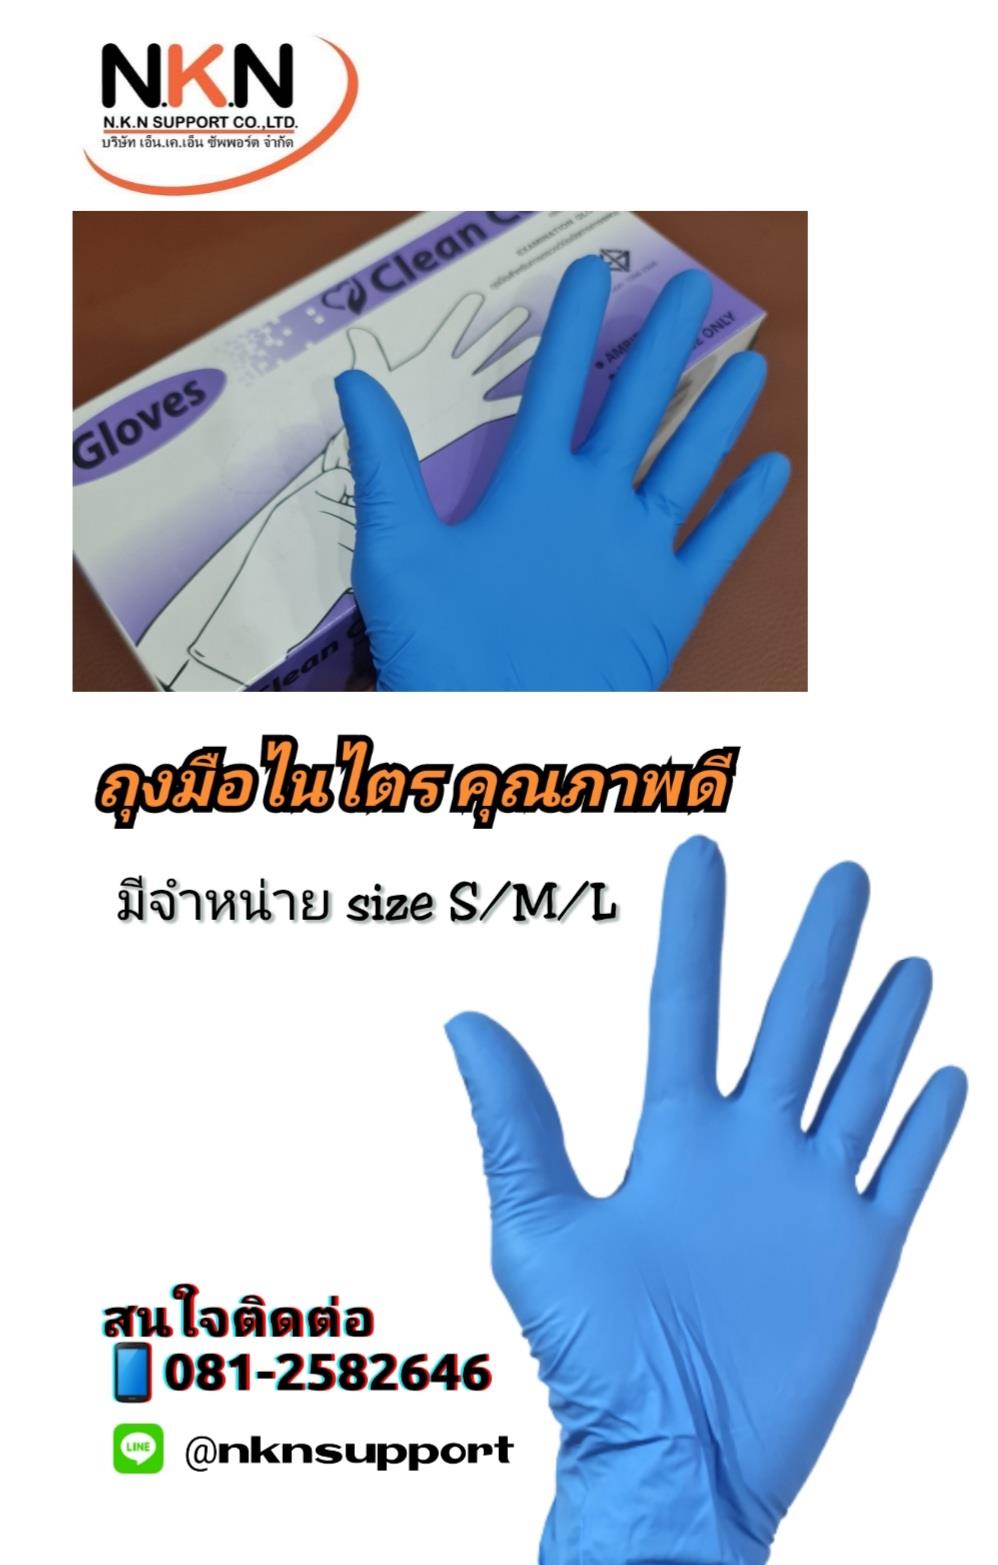 ถุงมือยางไนไตร/nitrile glove,ถุงมือยางไนไตร , ถุงมือไนไตร , nitrile glove,,Electrical and Power Generation/Safety Equipment